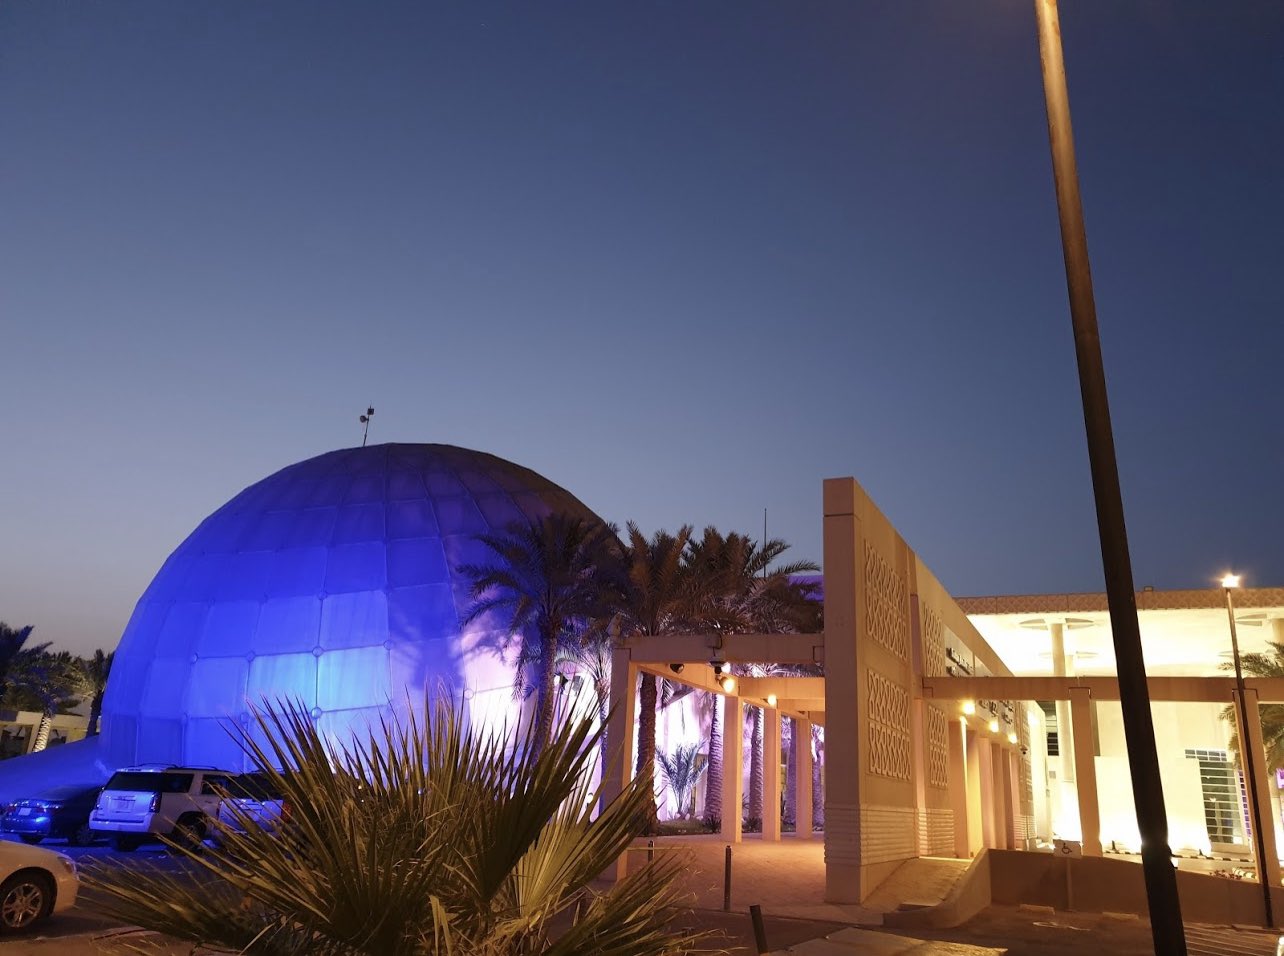 ابداع on Twitter: "• مركز الامير سلطان بن عبدالعزيز للعلوم والتقنية - متحف  علمي فعالية حلوه للعائلة وخاصةً الأطفال https://t.co/J2gBB1jyPG" / Twitter